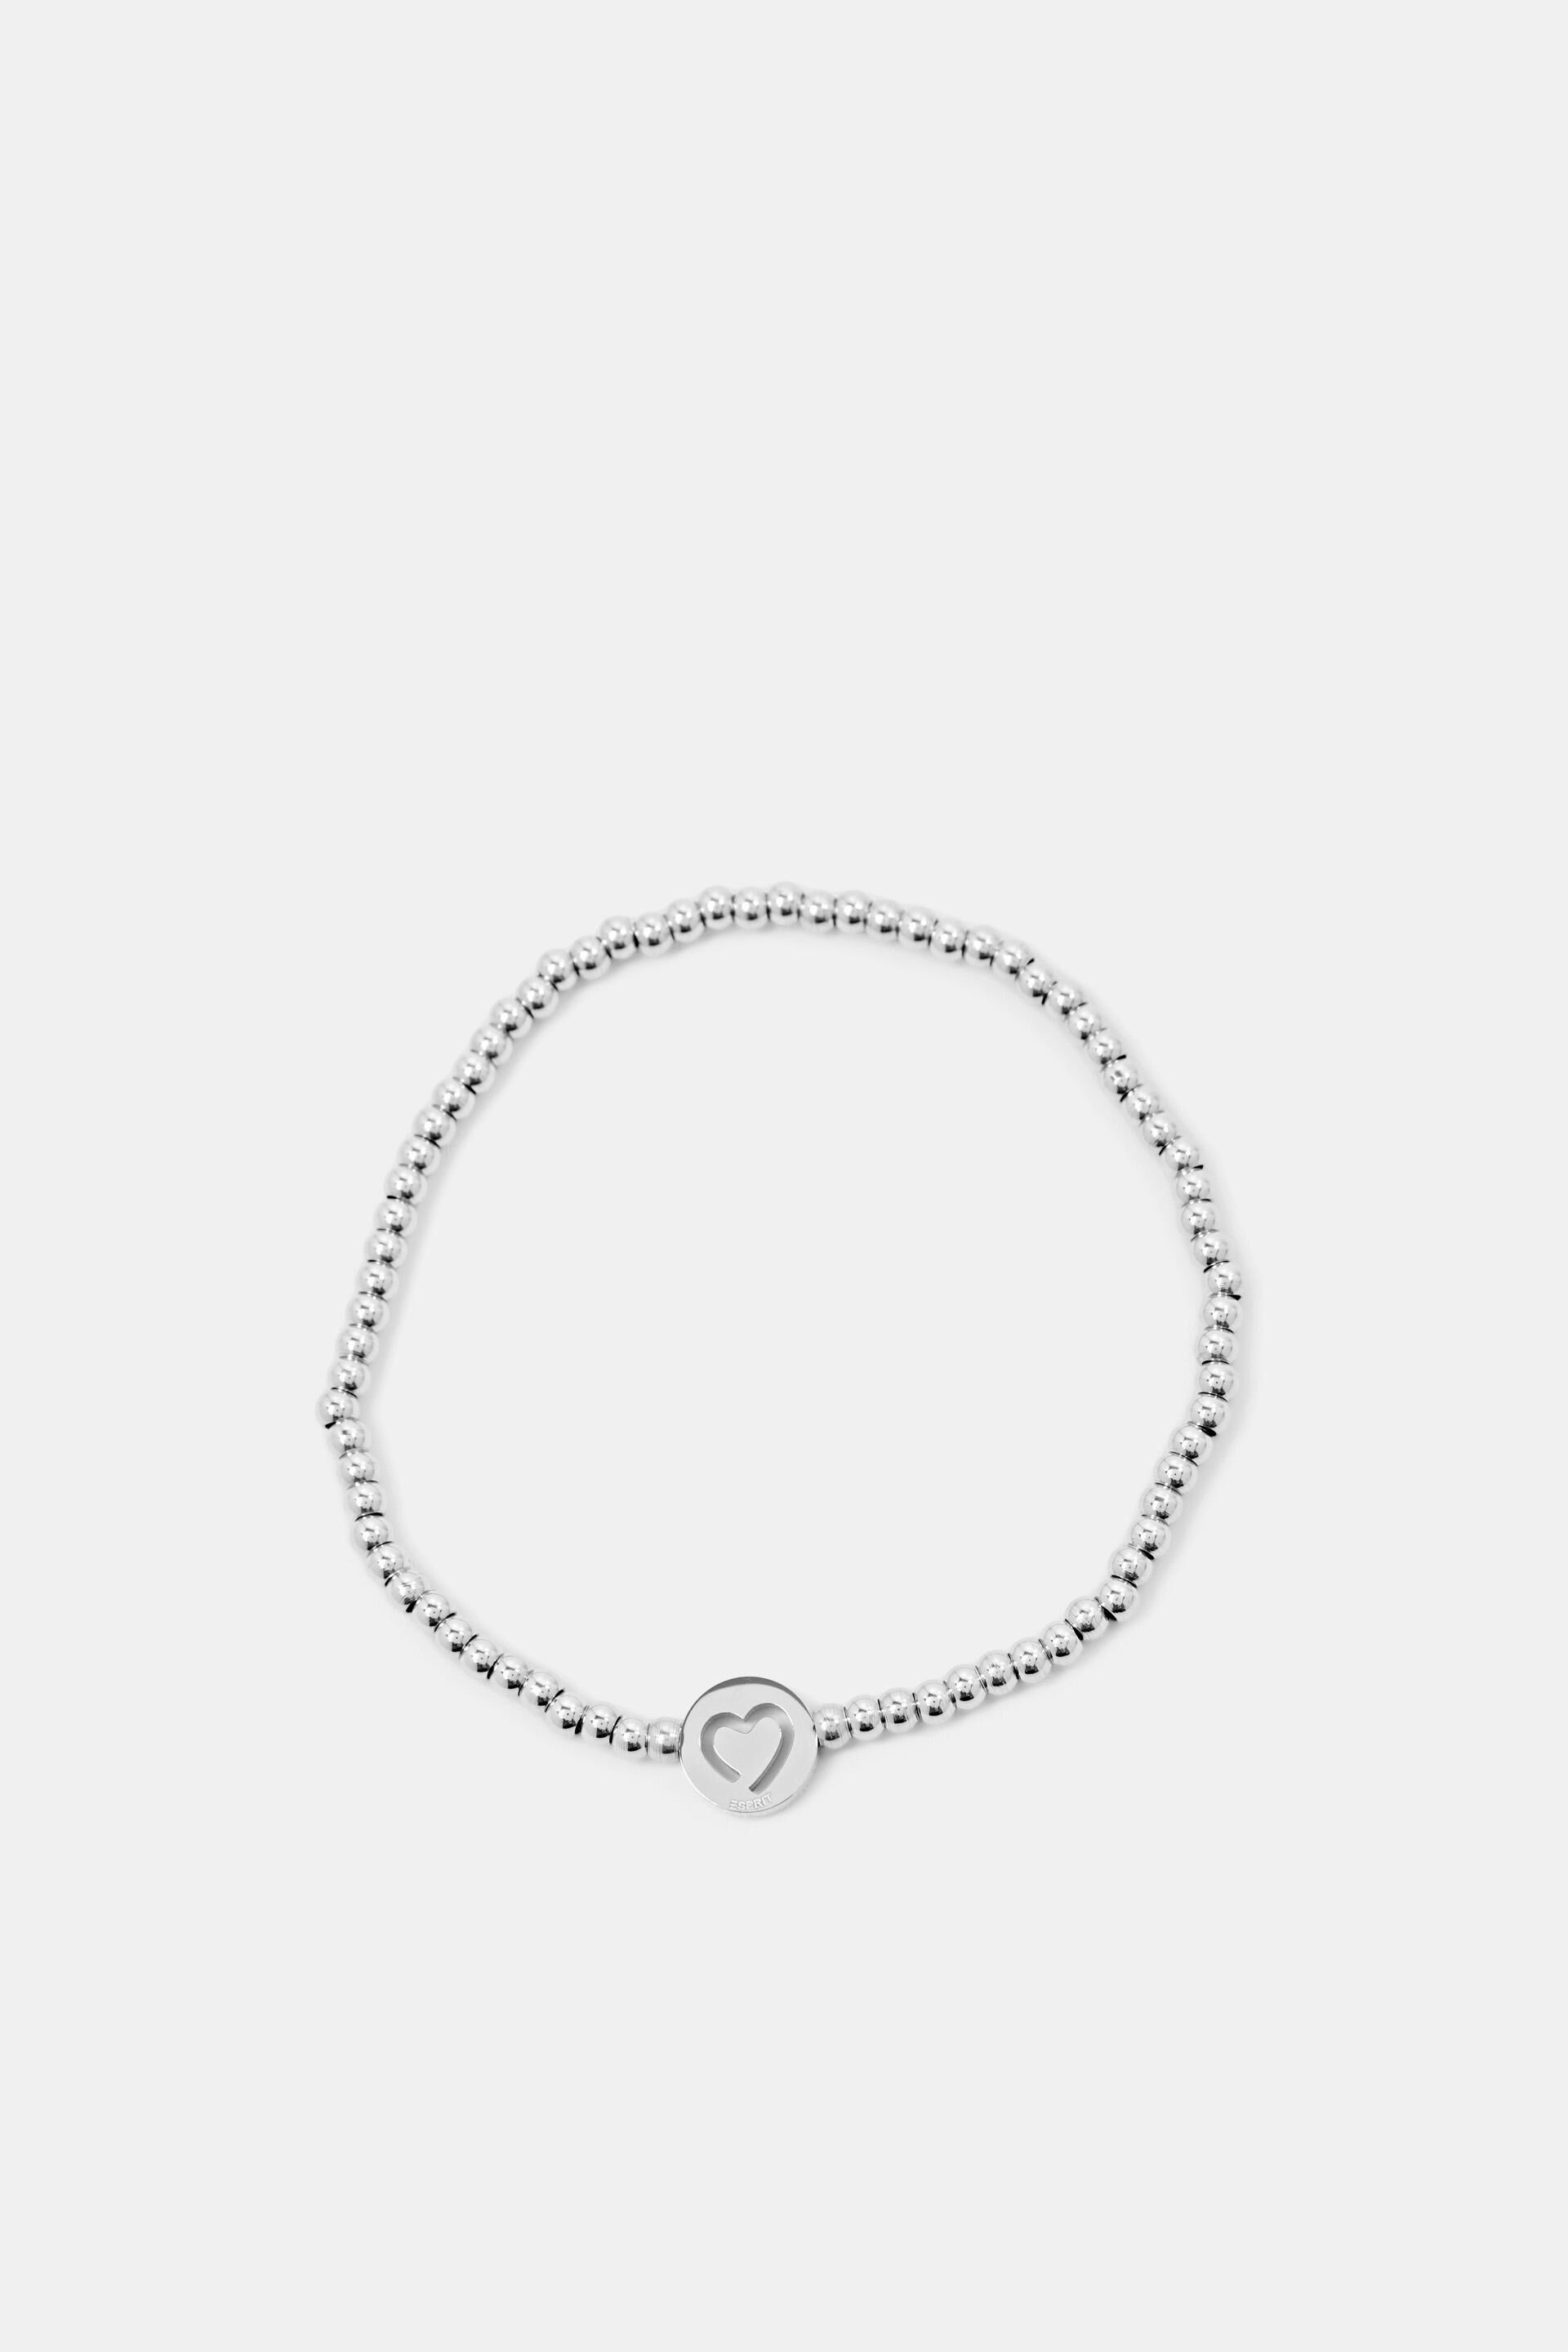 Esprit Online Store Bracelets